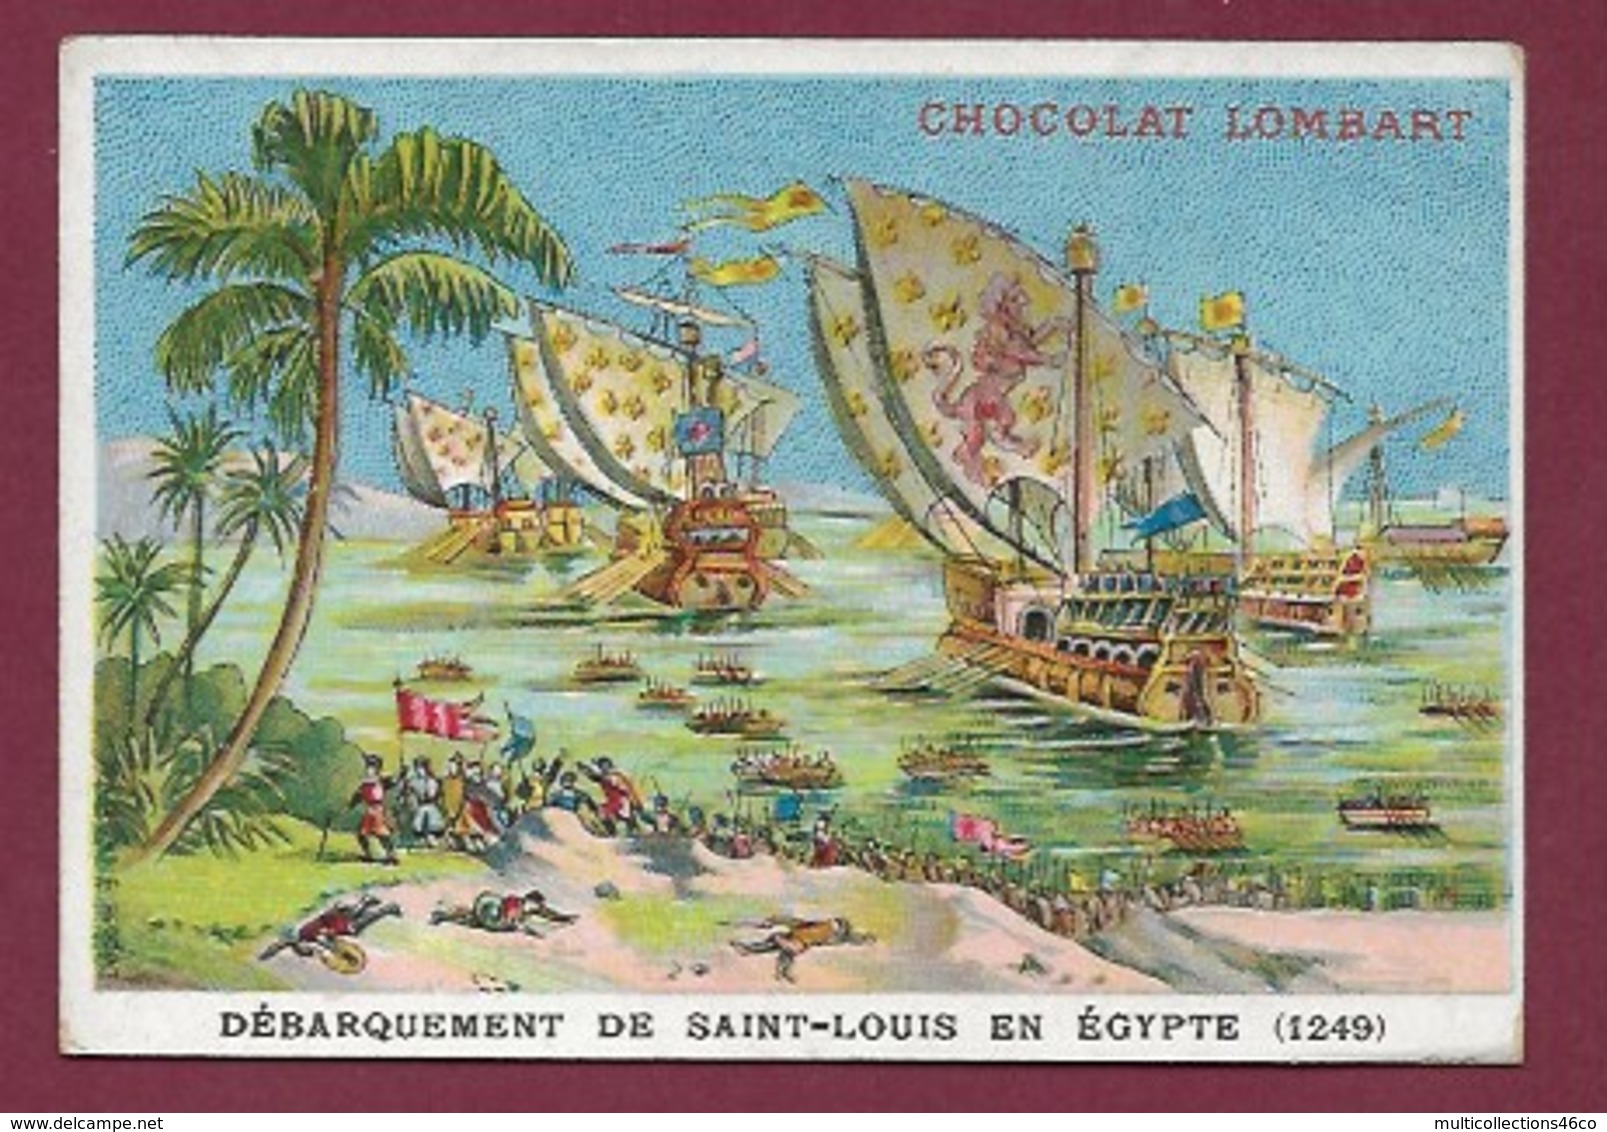 250619 - CHROMO CHOCOLAT LOMBART -  Débarquement De Saint-Louis En Egypte 1249 - Lombart